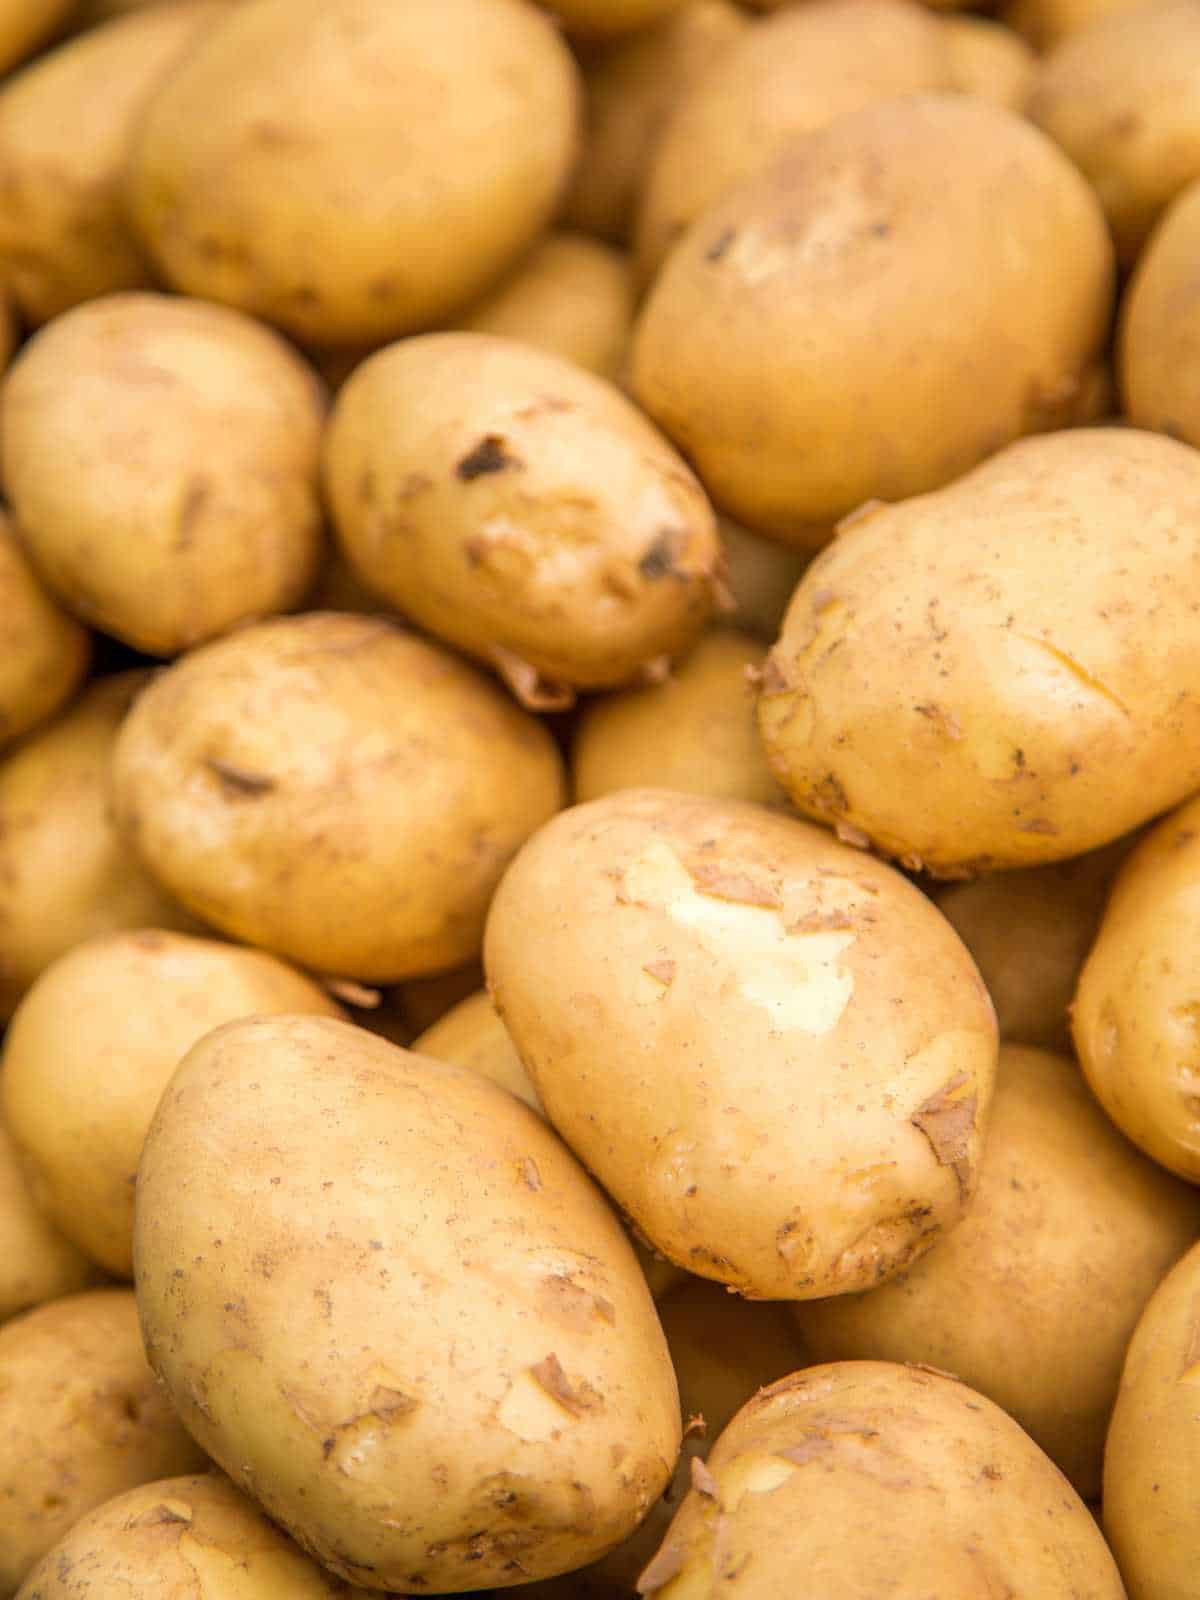 Origins of the Potato: In details